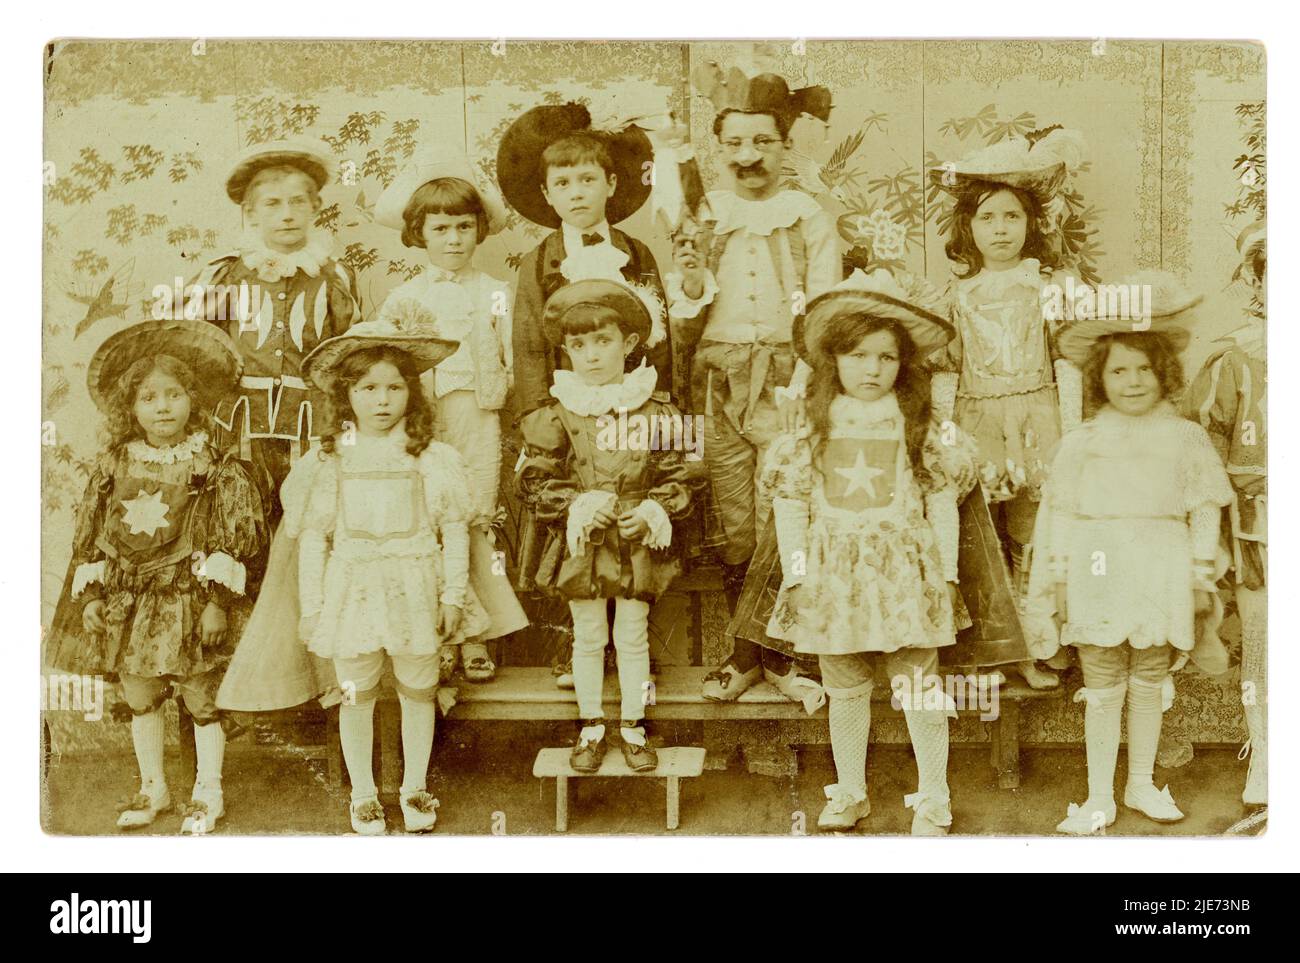 Original charmante französische Postkarte von kleinen Kindern in Kostüm in ausgefallenen Kleid des Hofes von Louis XIV, möglicherweise eine Geburtstagsfeier oder Festtag, Nationalfeiertag, gesendet an Authon-du-Perche in Eure-et-Loire, geschrieben in 1910. Stockfoto